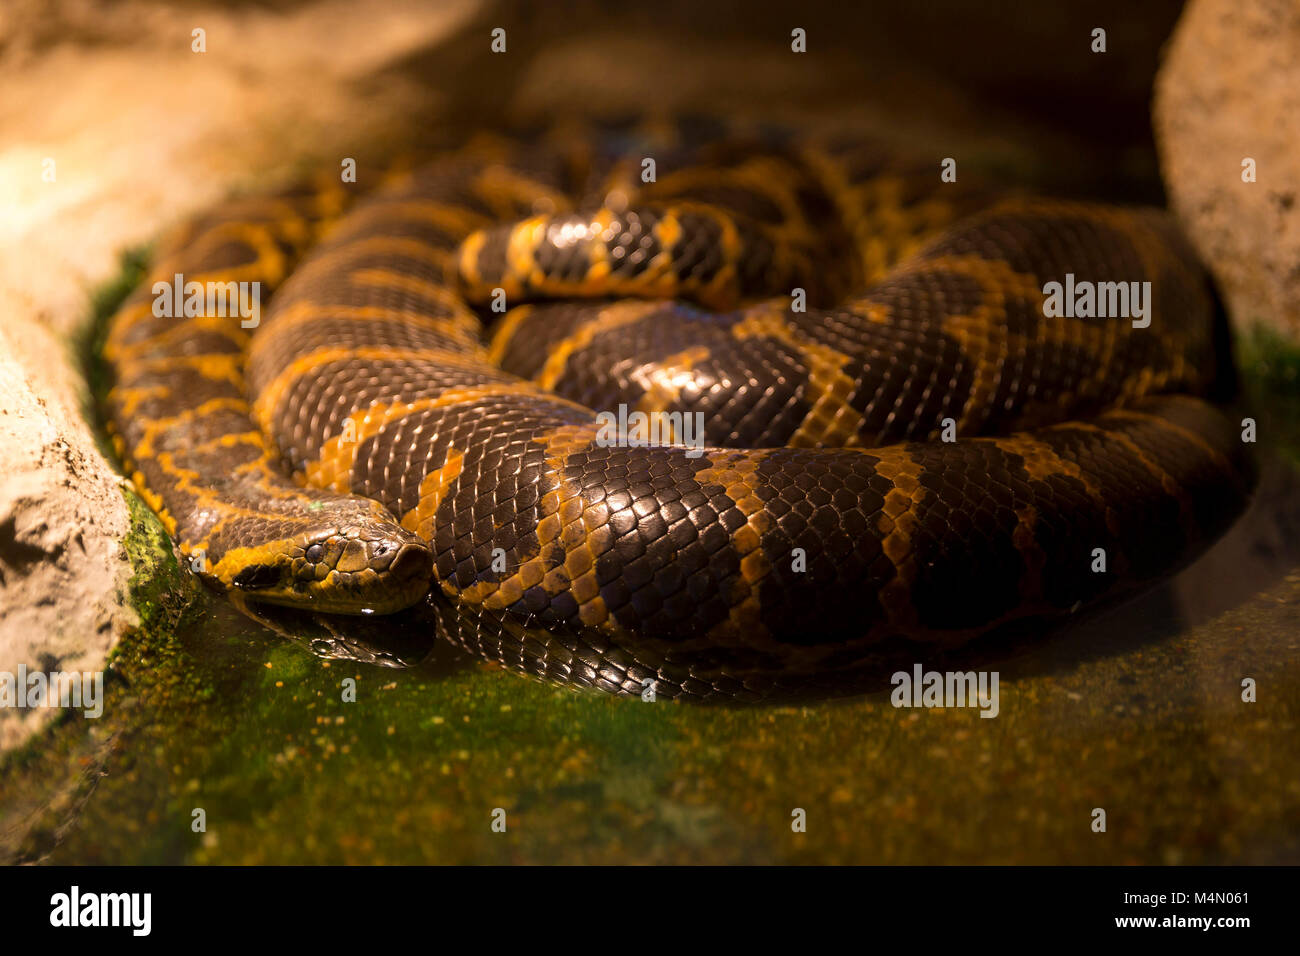 Anaconda du Paraguay dormir dans l'eau, près de rock. Anaconda du Paraguay est un boa espèce endémique de sud de l'Amérique du Sud. Banque D'Images